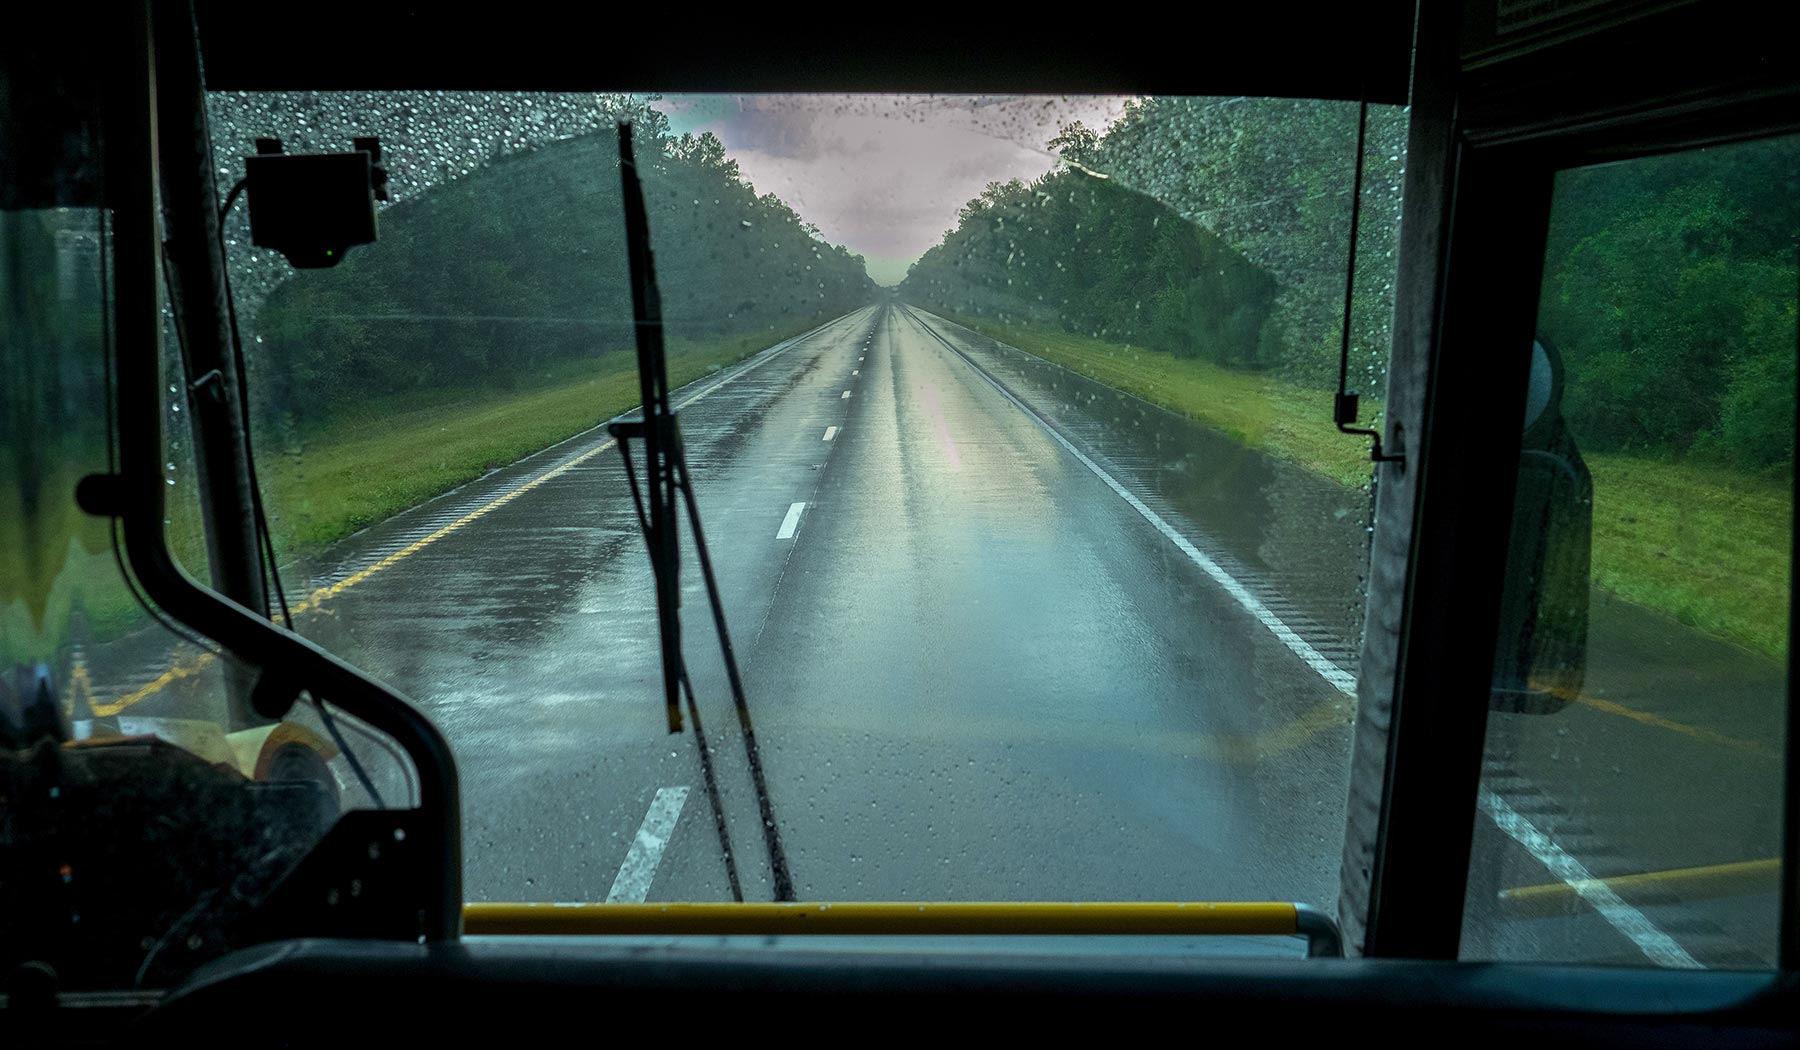 bus_road_windshield3.jpg